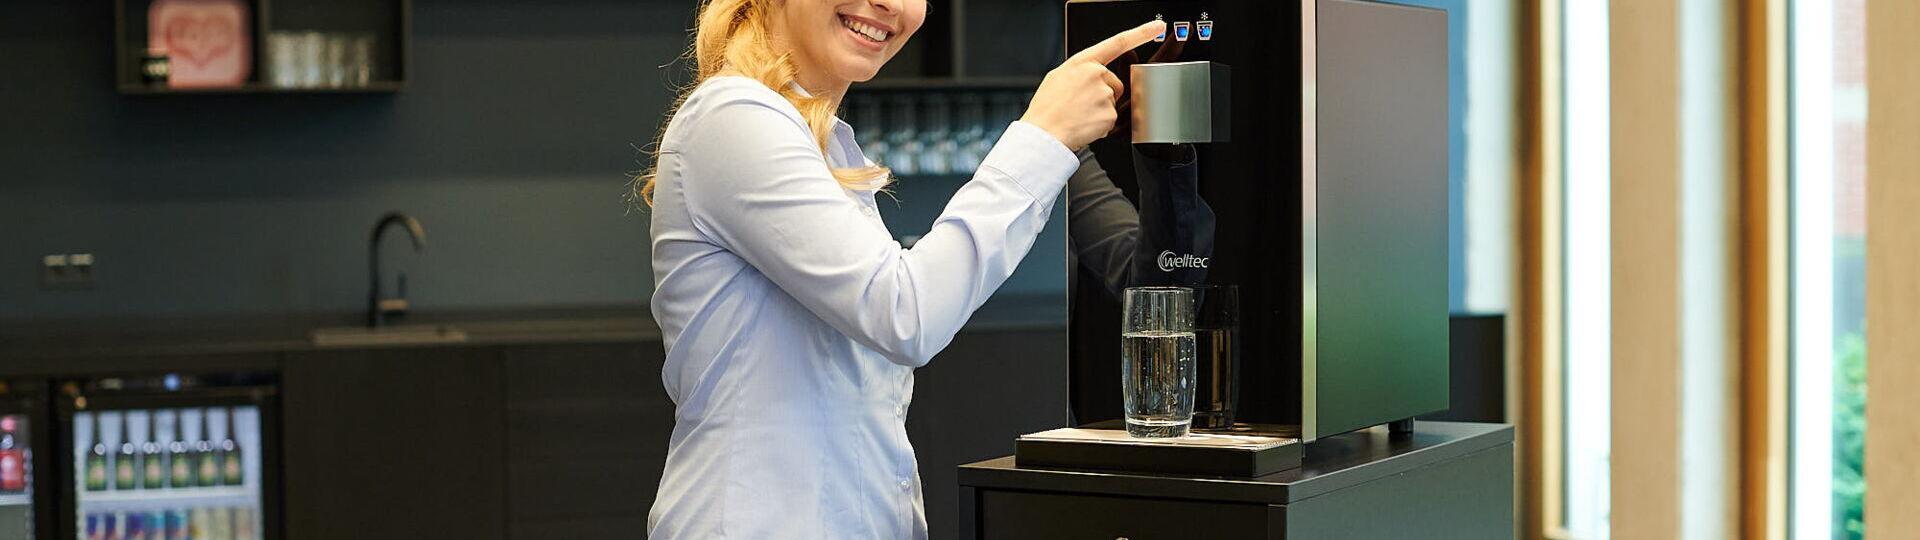 Junge Frau zieht sich ein Glas Wasser aus dem Wasserspender